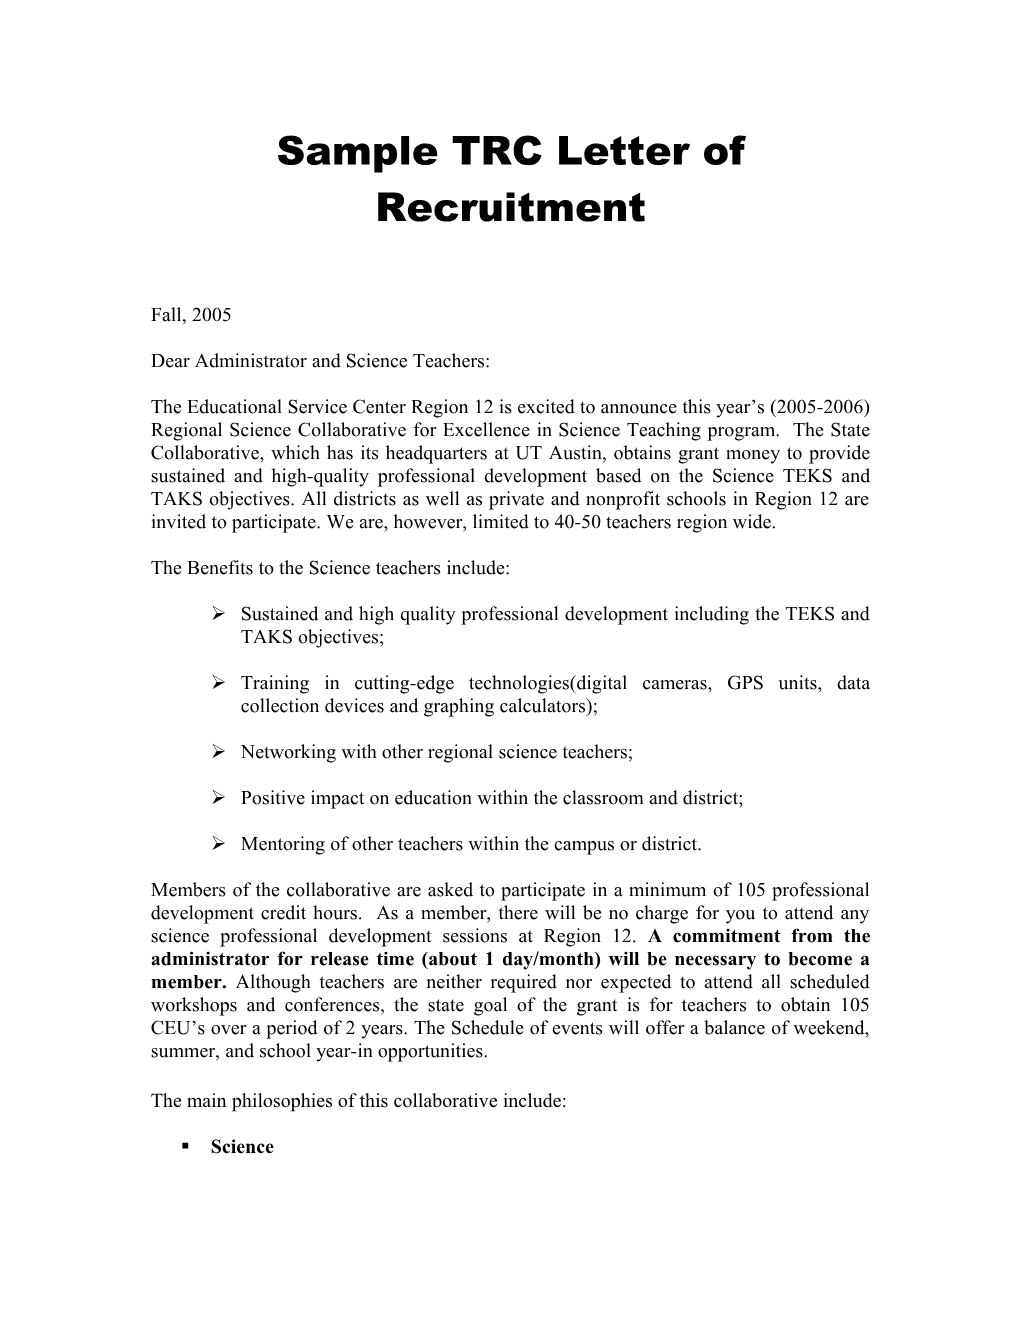 Sample TRC Letter of Recruitment